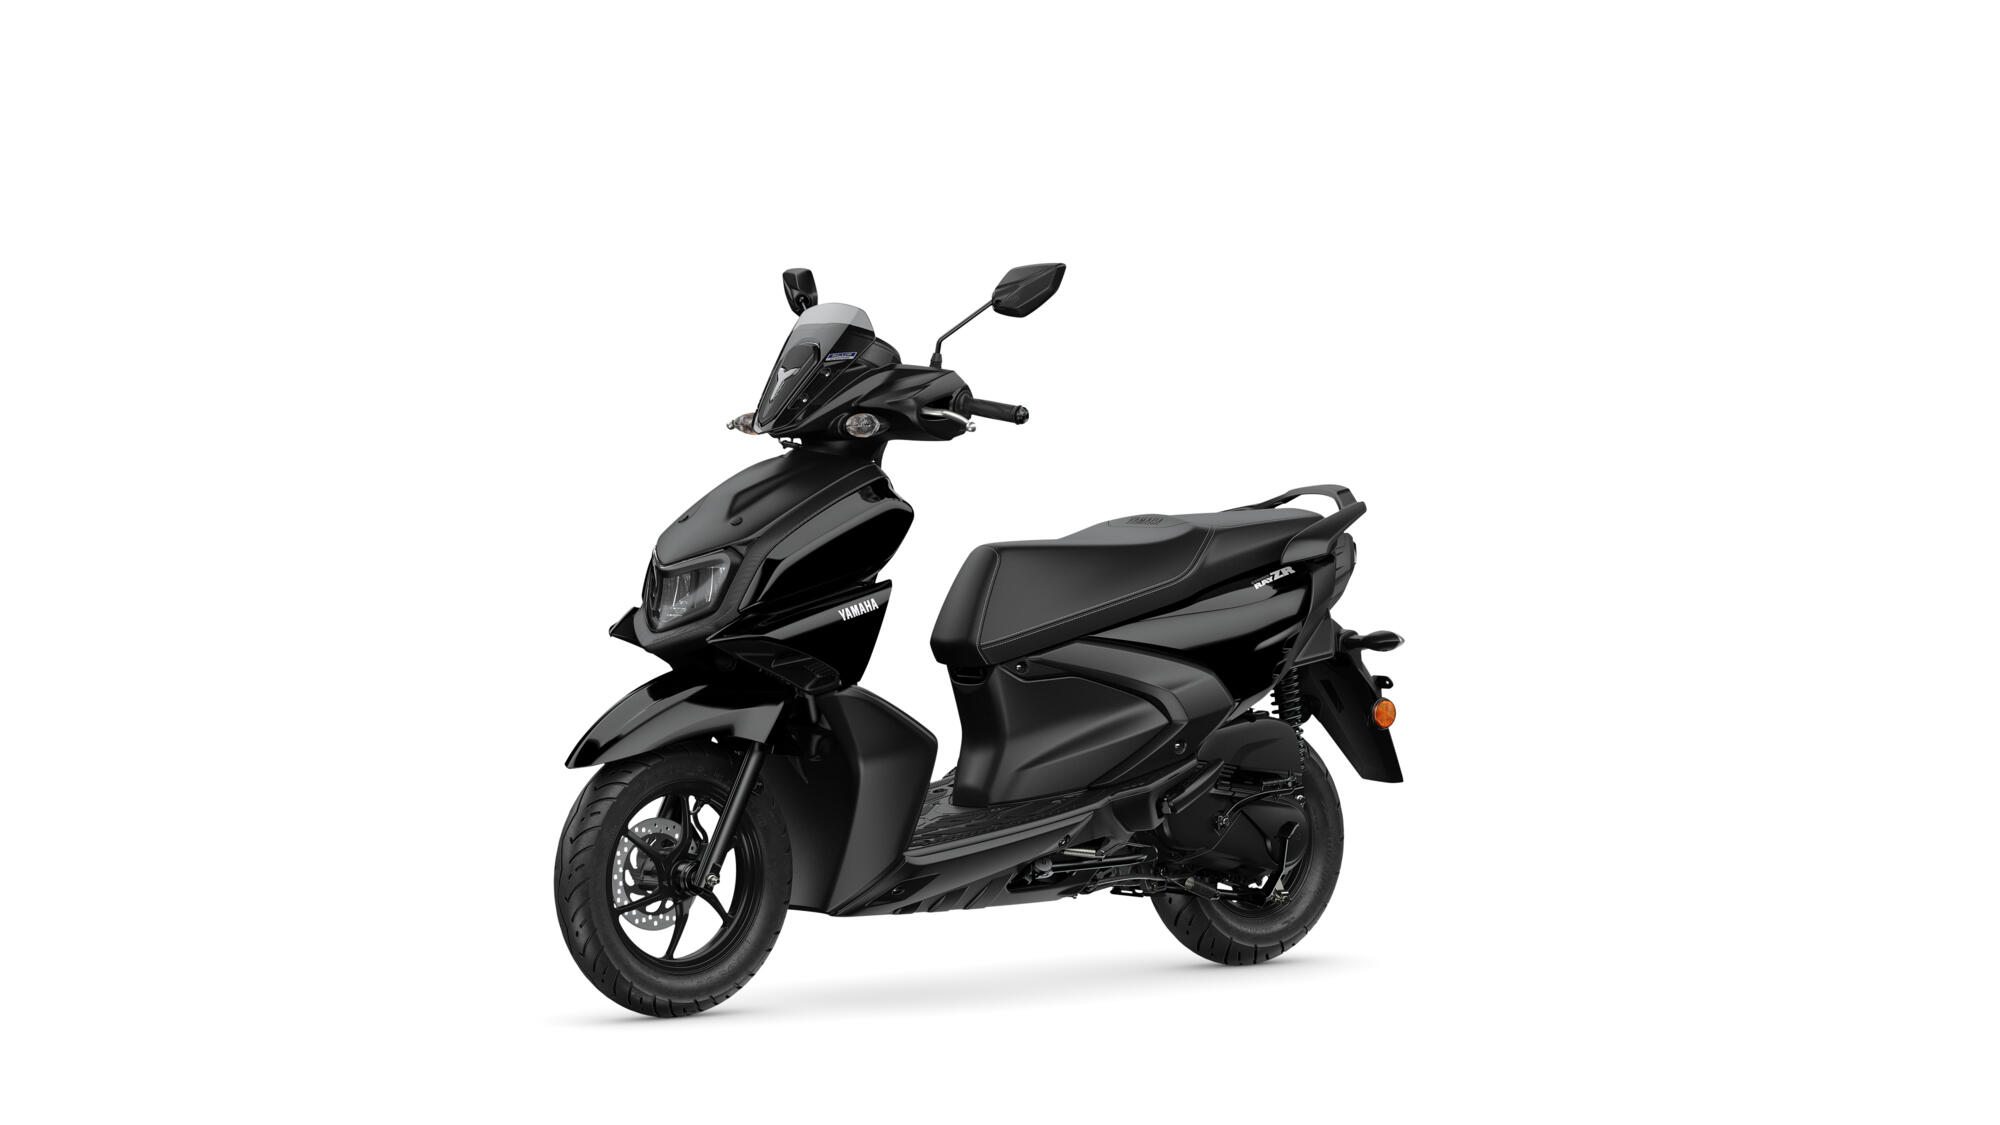 ficha-tecnica-scooter-da-yamaha-ray-zr Nova scooter da Yamaha promete o menor consumo da categoria